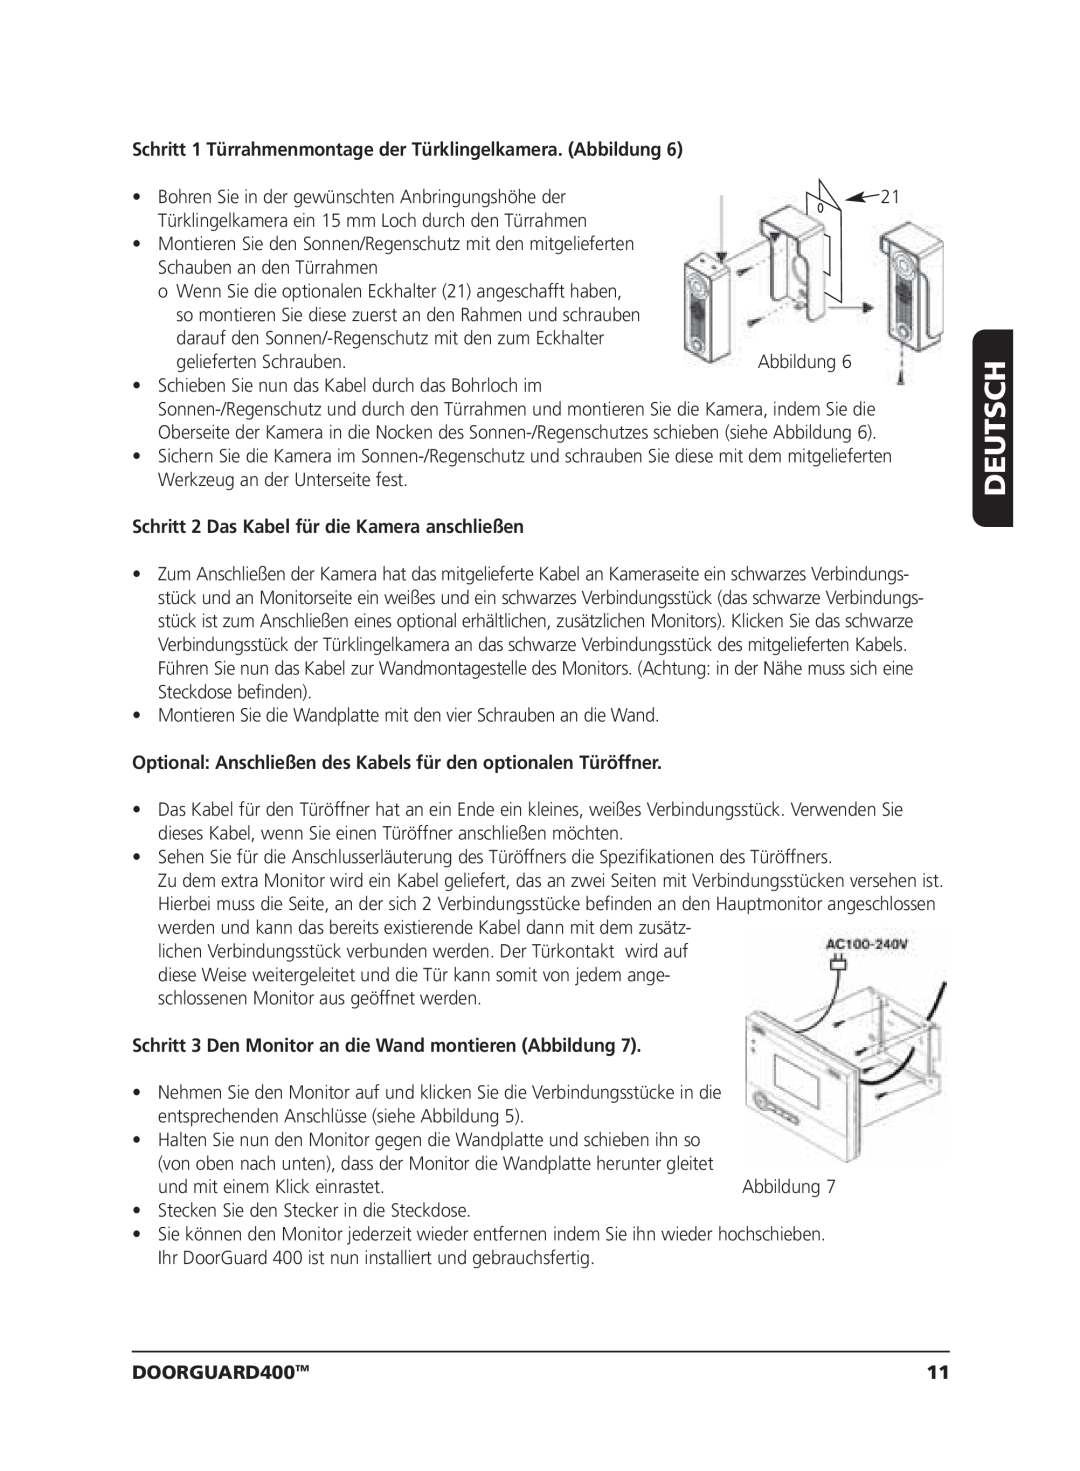 Marmitek VIDEO DOORPHONE user manual Schritt 2 Das Kabel für die Kamera anschließen, Deutsch, DOORGUARD400TM 